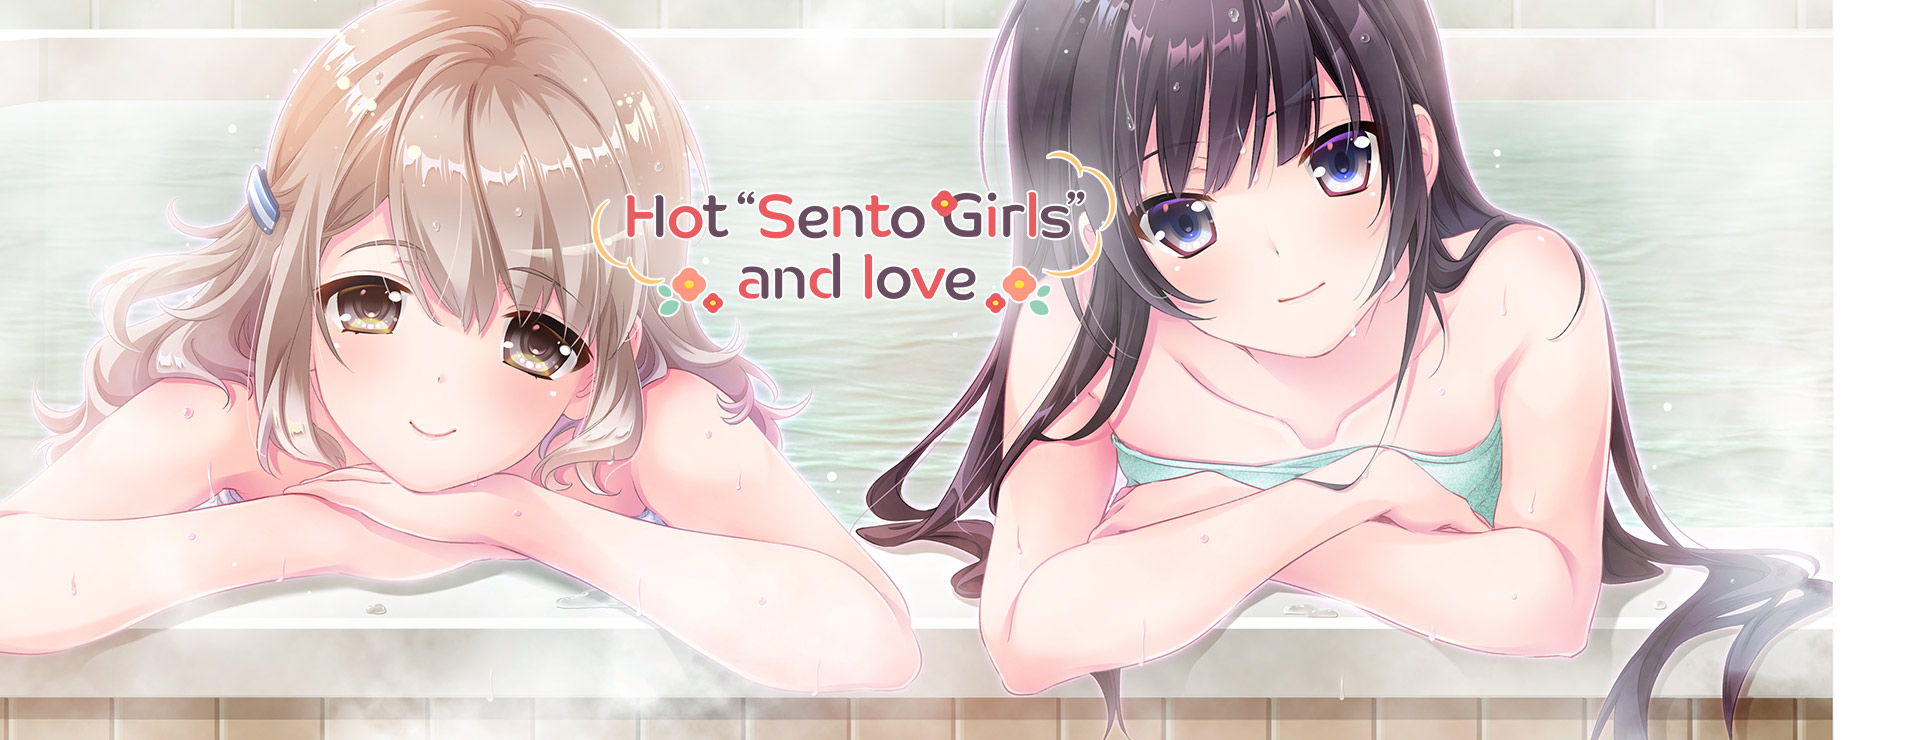 Hot "Sento Girls" and Love - Novela Visual Juego